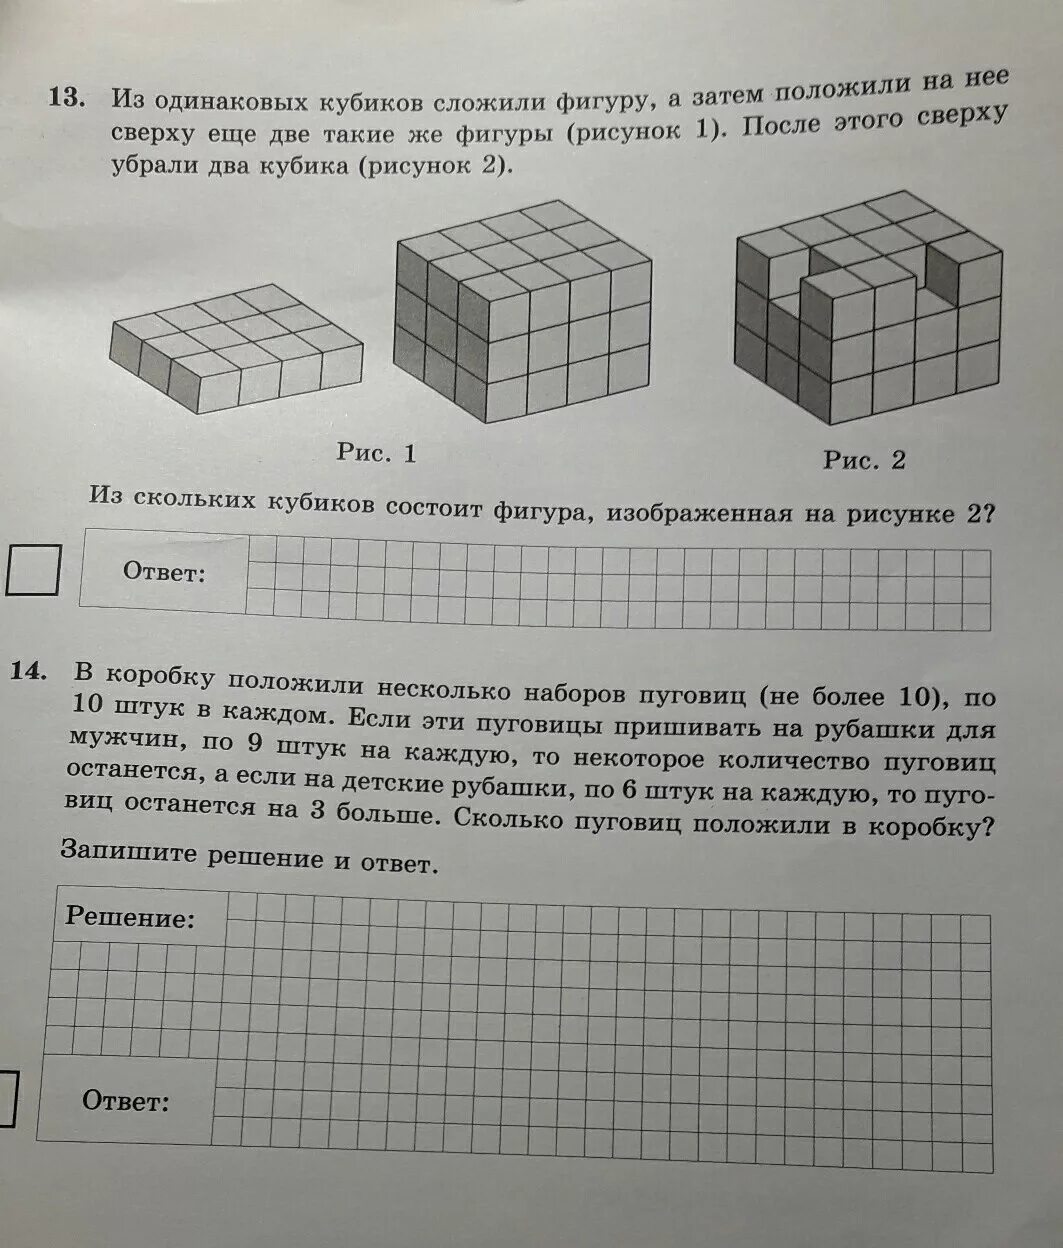 Из одинаковых кубиков. Фигуры из одинаковых кубиков. Из одинаковых кубиков сложили фигуру. Фигуры составленные из одинаковых кубиков.